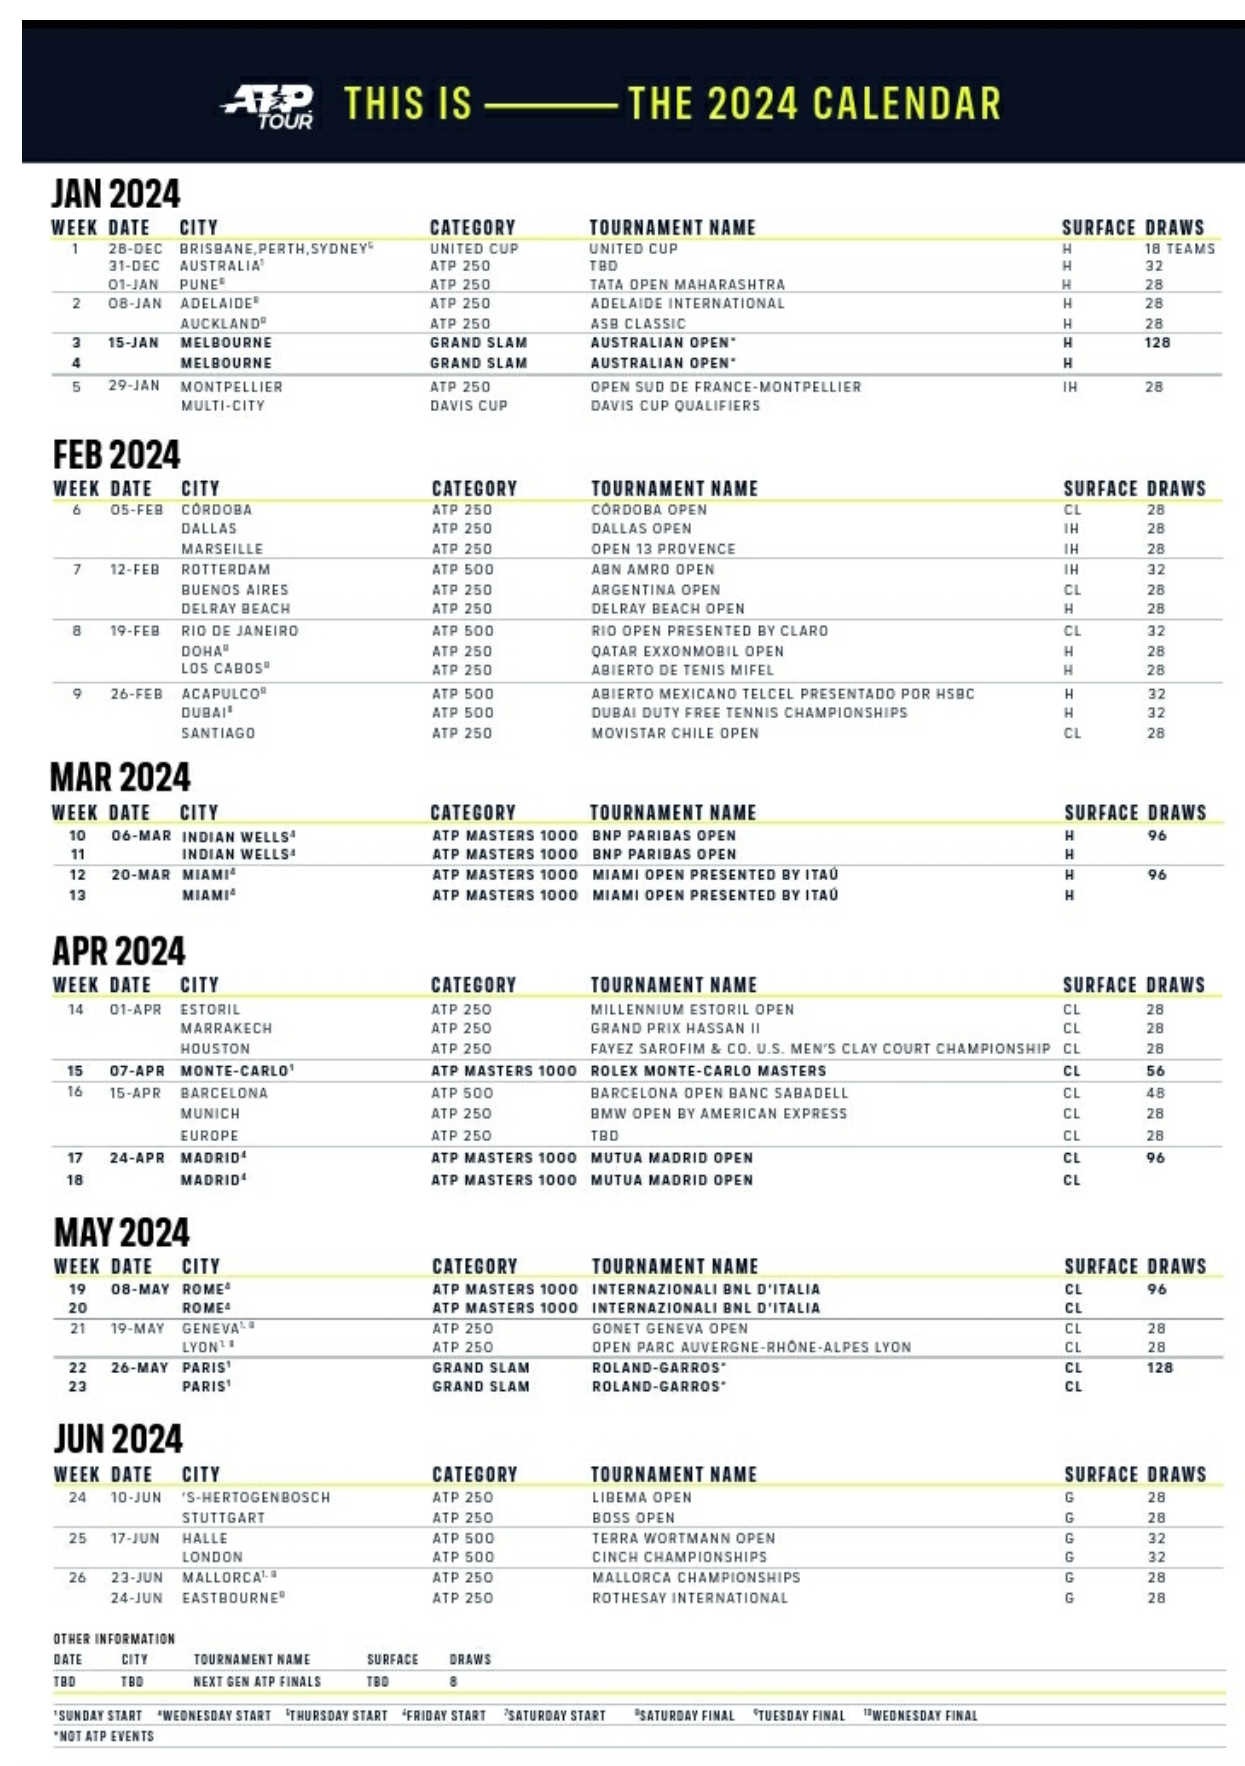 Le calendrier ATP 2024 dévoilé - Tennis Majors FR